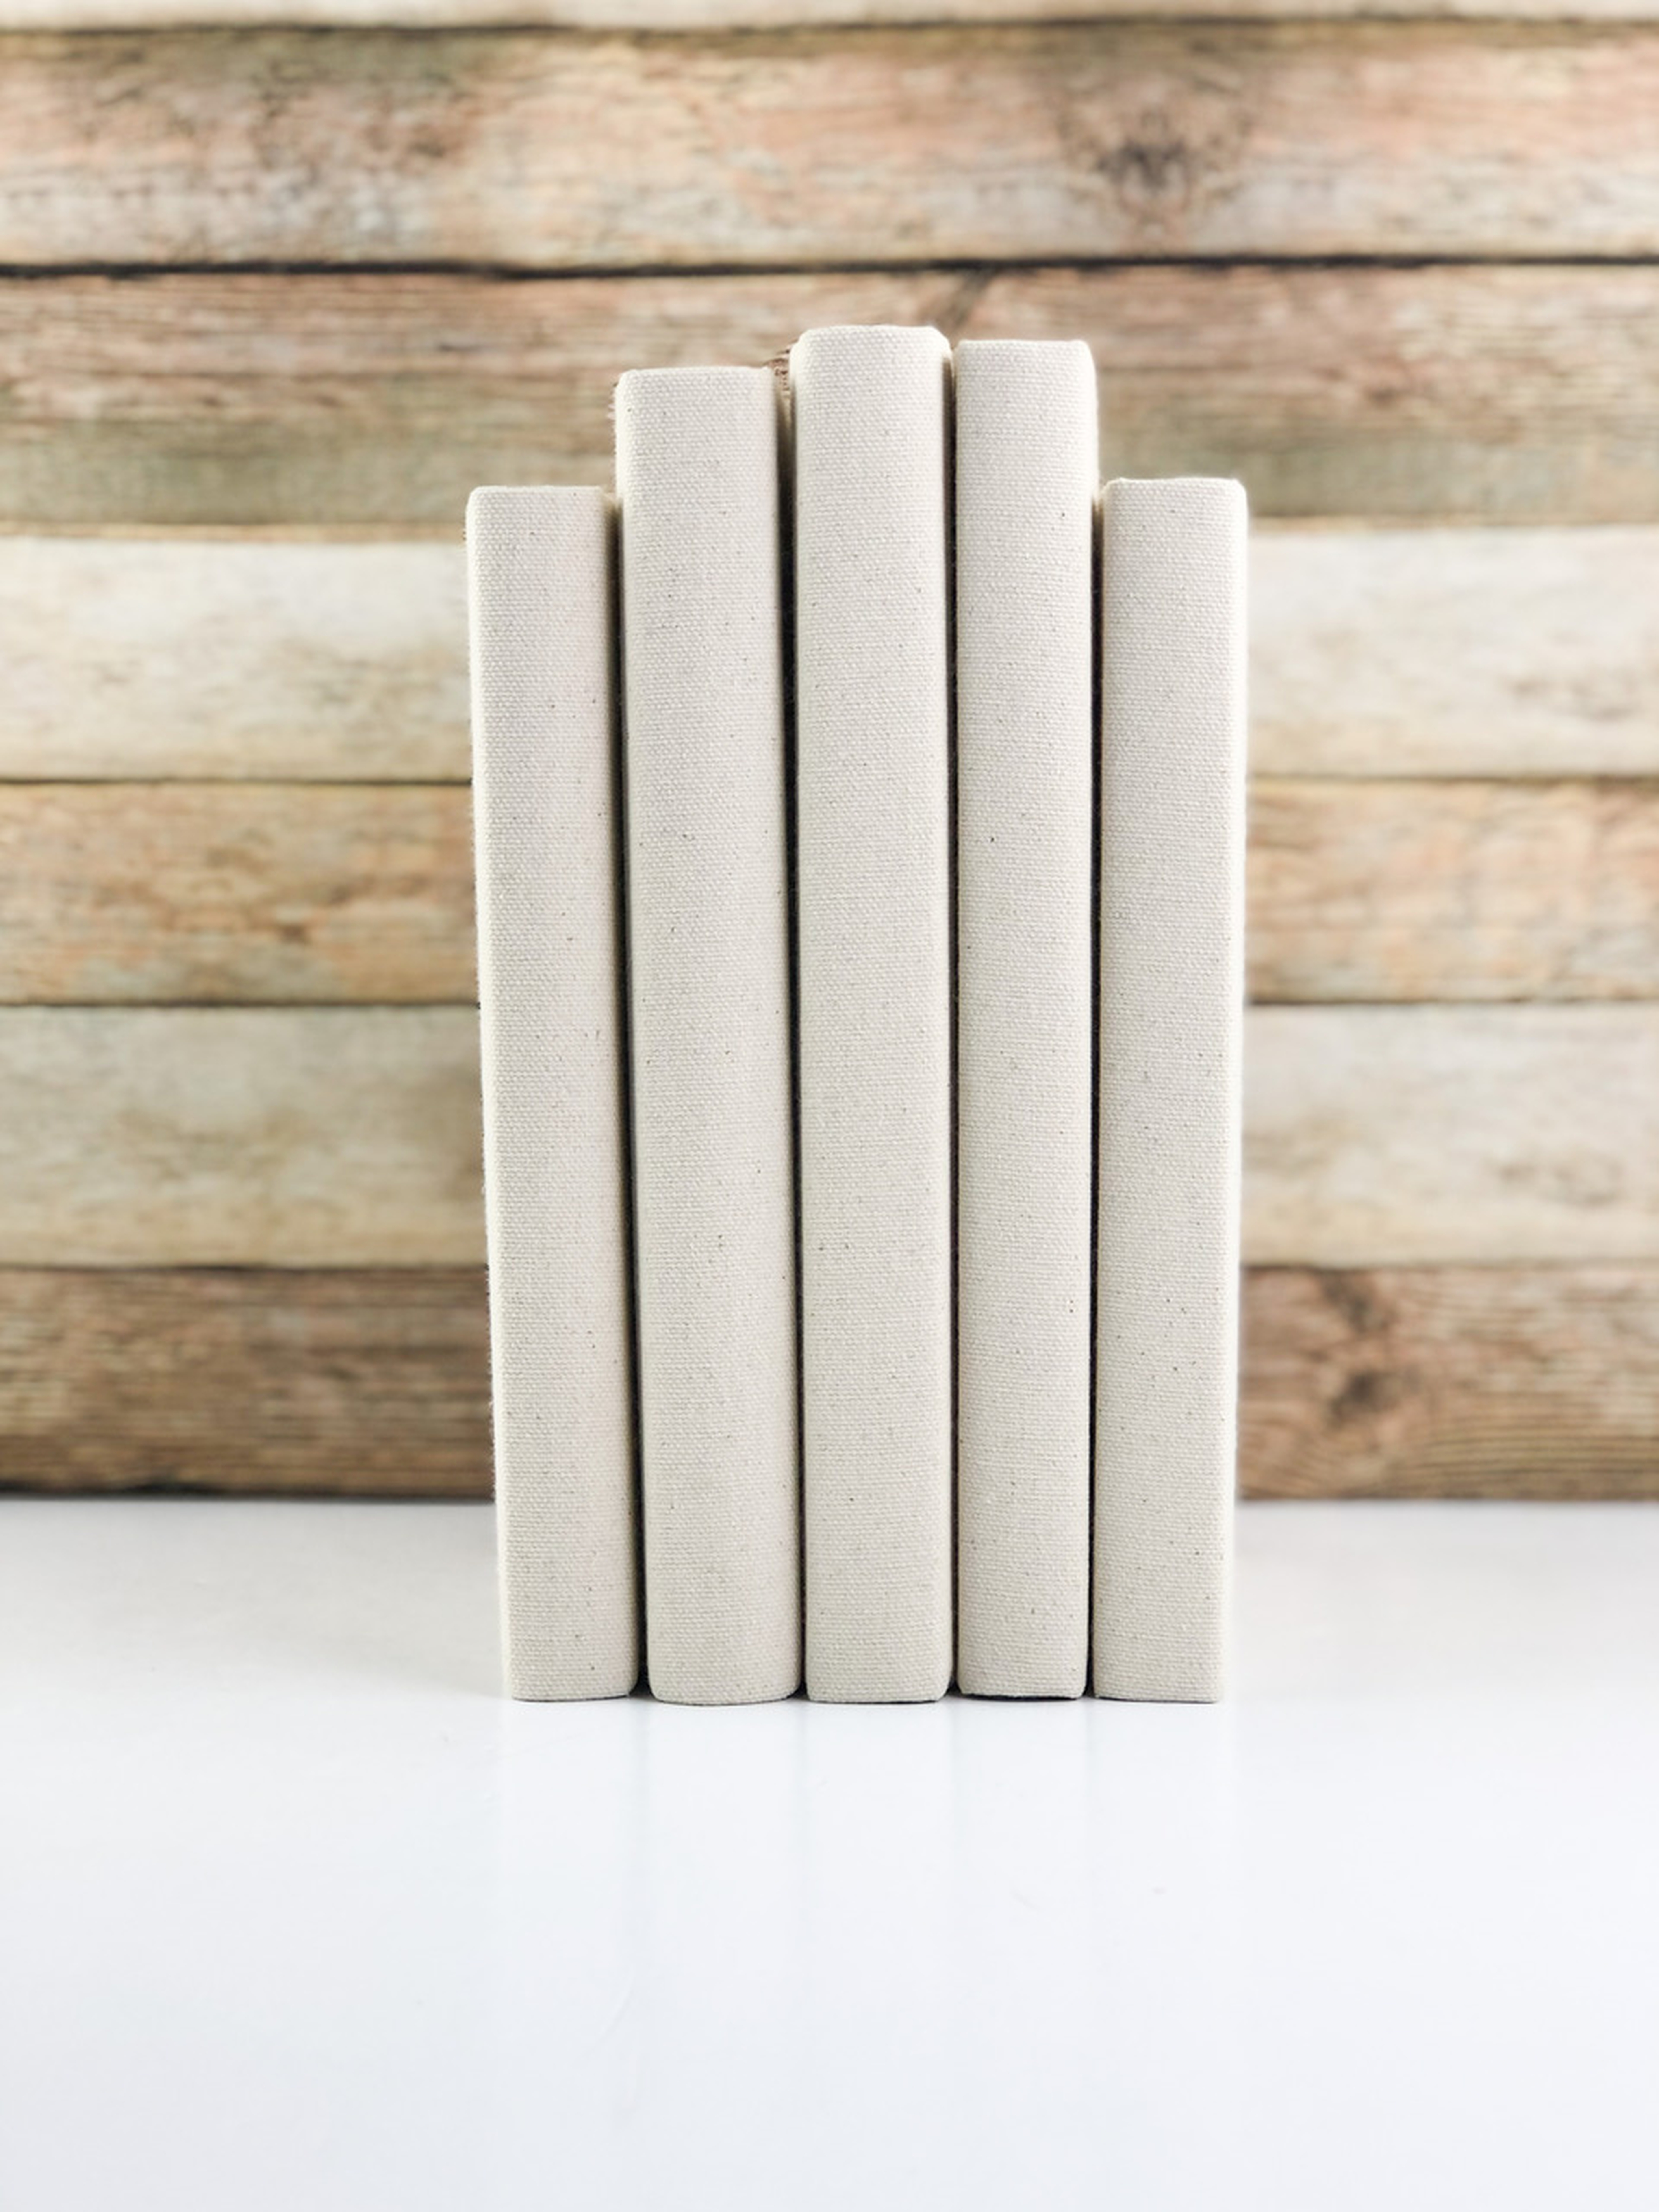 Decorative Books, Solid Cream, Set of 5 - Havenly Essentials